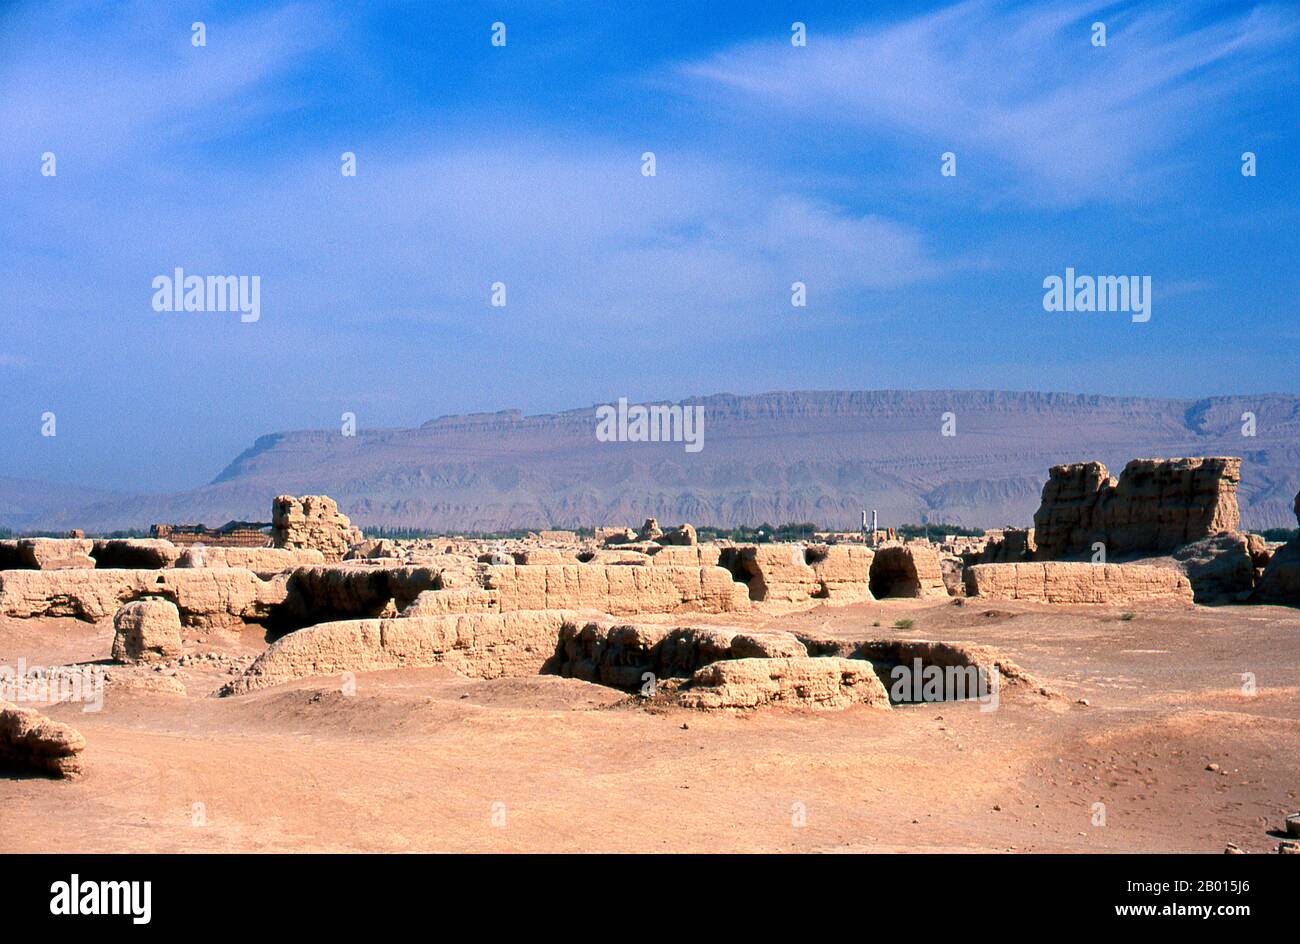 China: Die Ruinen in Karakhoja oder Gaochang Gucheng (alte Stadt Gaochang), in der Nähe von Turpan, Provinz Xinjiang. Die Ruinen von Karakhoja oder Gaochang Gucheng stammen aus der ersten Han-chinesischen Eroberung des Gebiets im 2. Jahrhundert v. Chr. Etwa 46 km südöstlich von Turpan am Rande der Lop-Wüste gelegen, ist Karakhoja größer als Yarkhoto, aber eher weniger gut erhalten. Ursprünglich als Garnisonsstadt gegründet, entwickelte sie sich zu einer wohlhabenden Stadt in der Tang-Zeit, bevor sie schließlich im 14. Jahrhundert verlassen wurde, wahrscheinlich aufgrund einer Kombination aus endemischer Kriegsführung und Wüstenbildung. Stockfoto